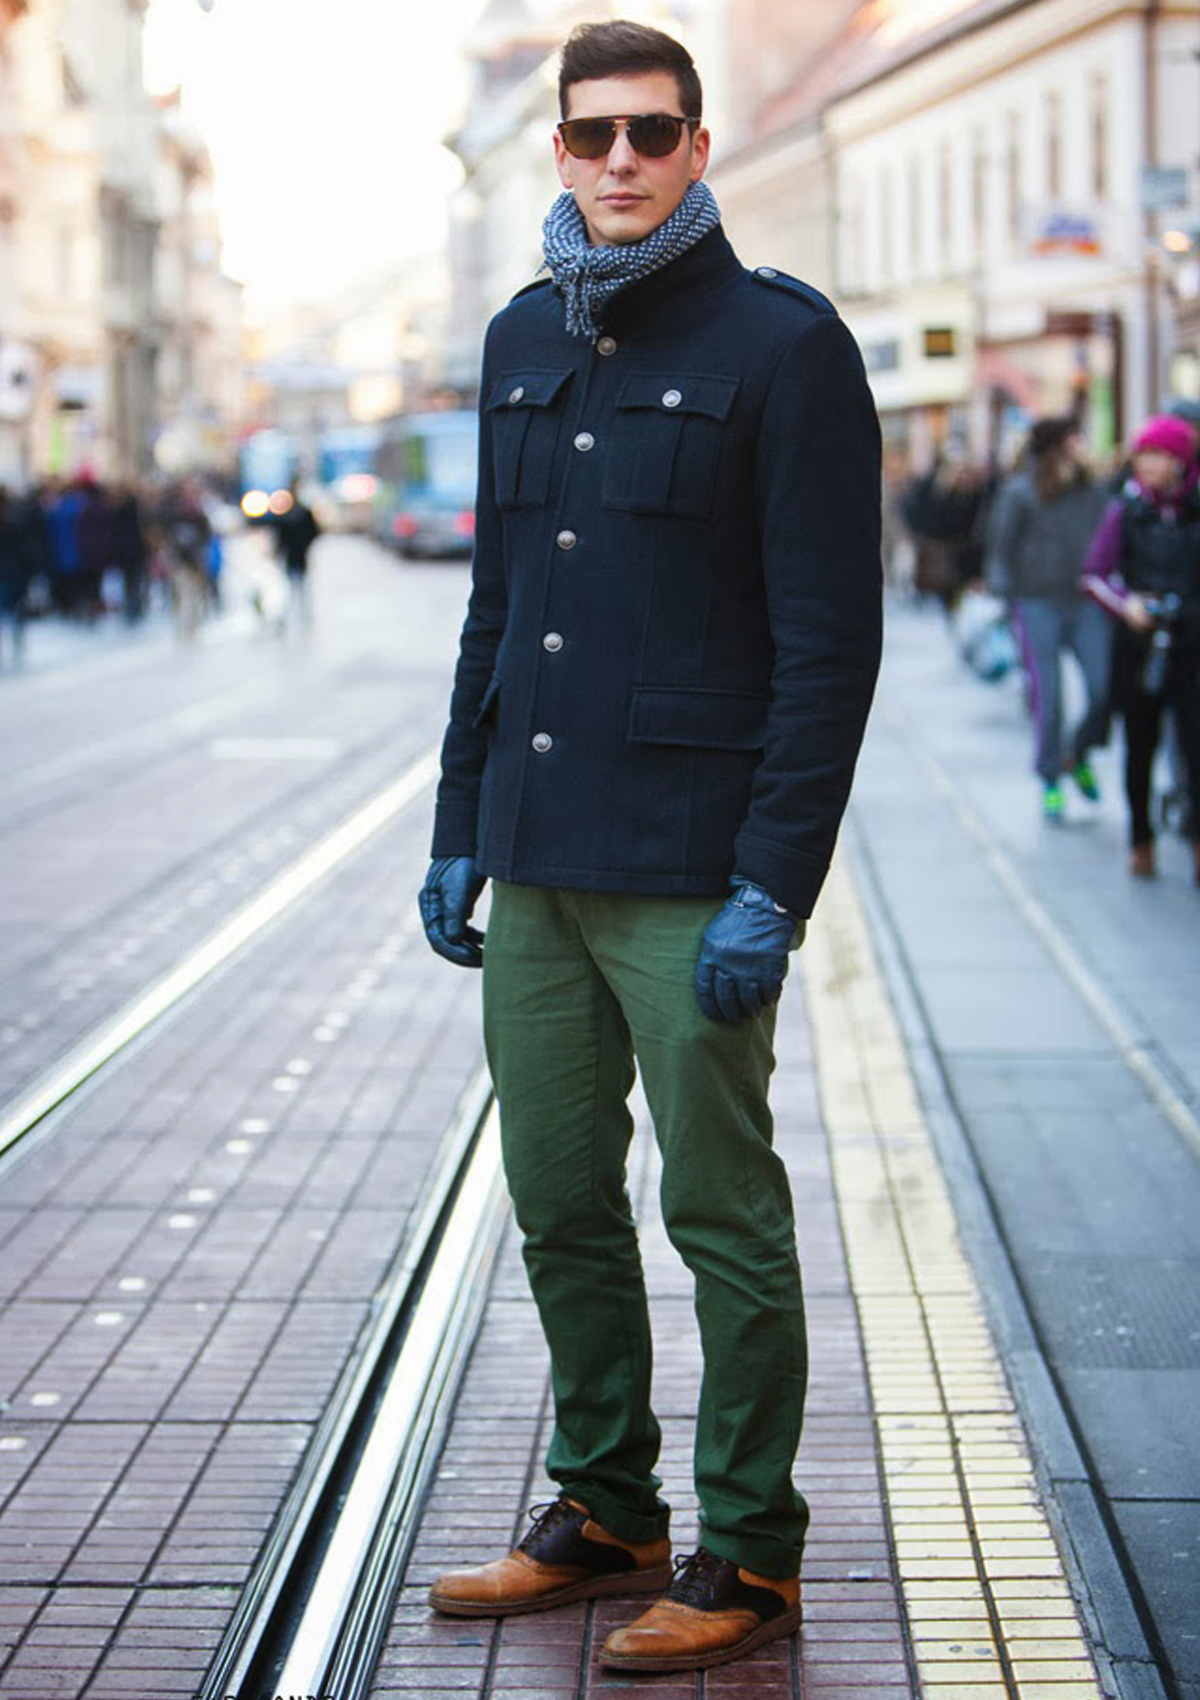 Зеленое мужское пальто. Мужской стиль. Зимний лук мужской. Стиль одежды мужской. Мужской зимний стиль.